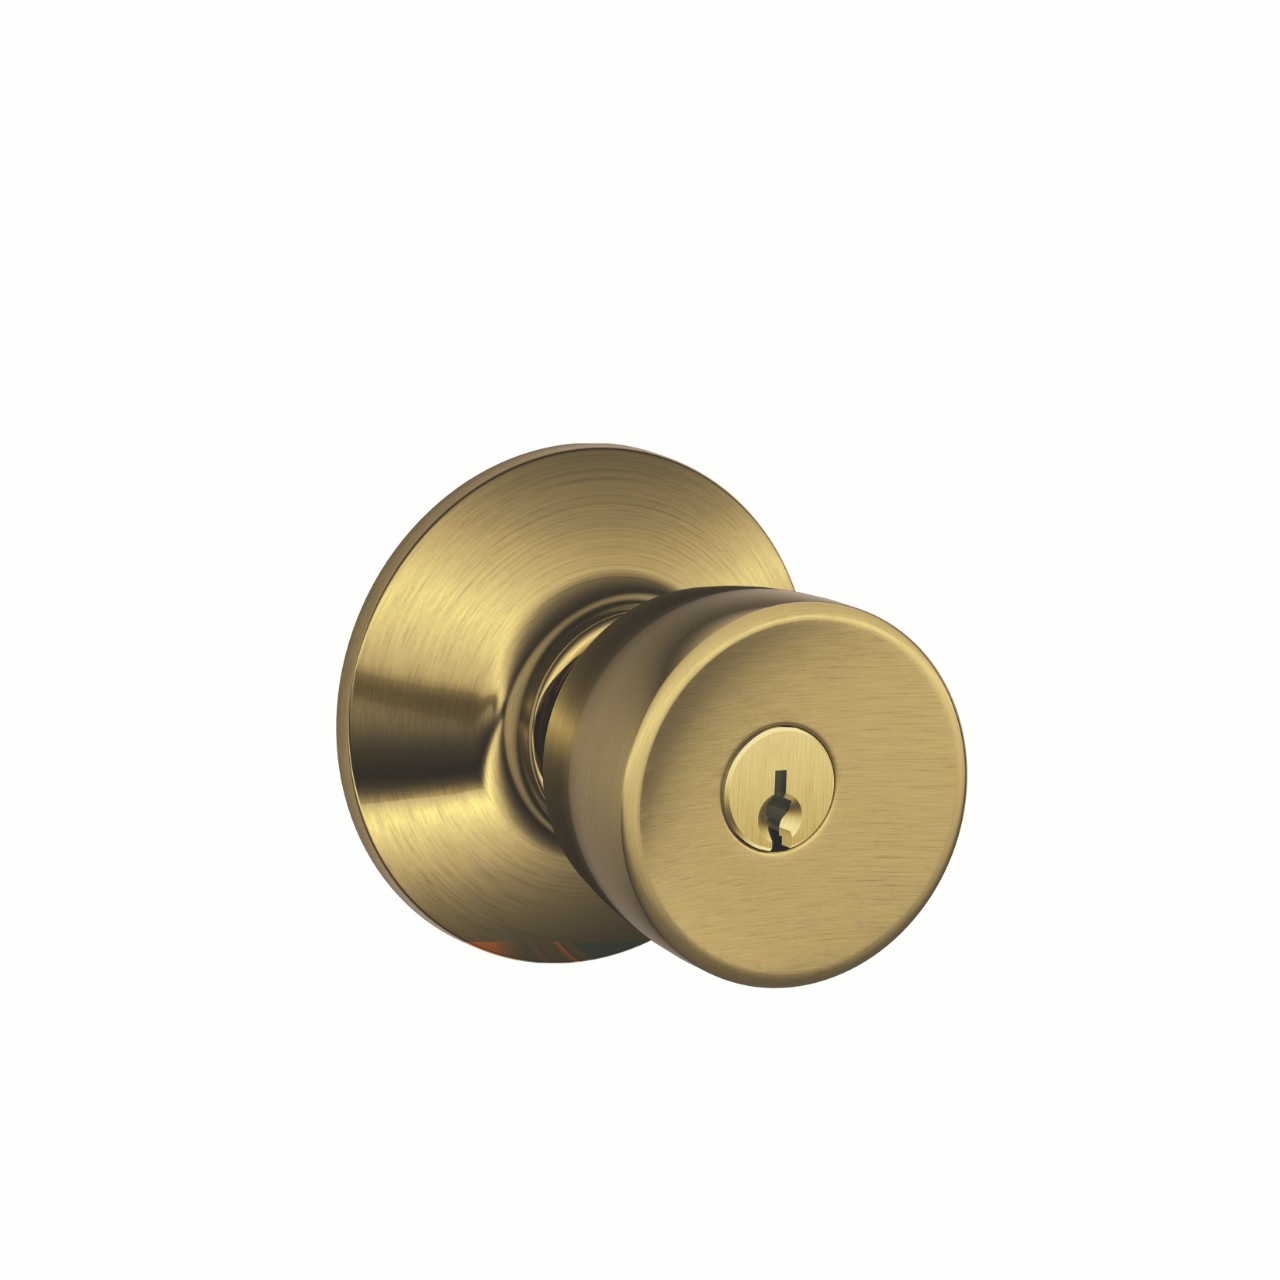 Bell Knob Keyed Entry Lock